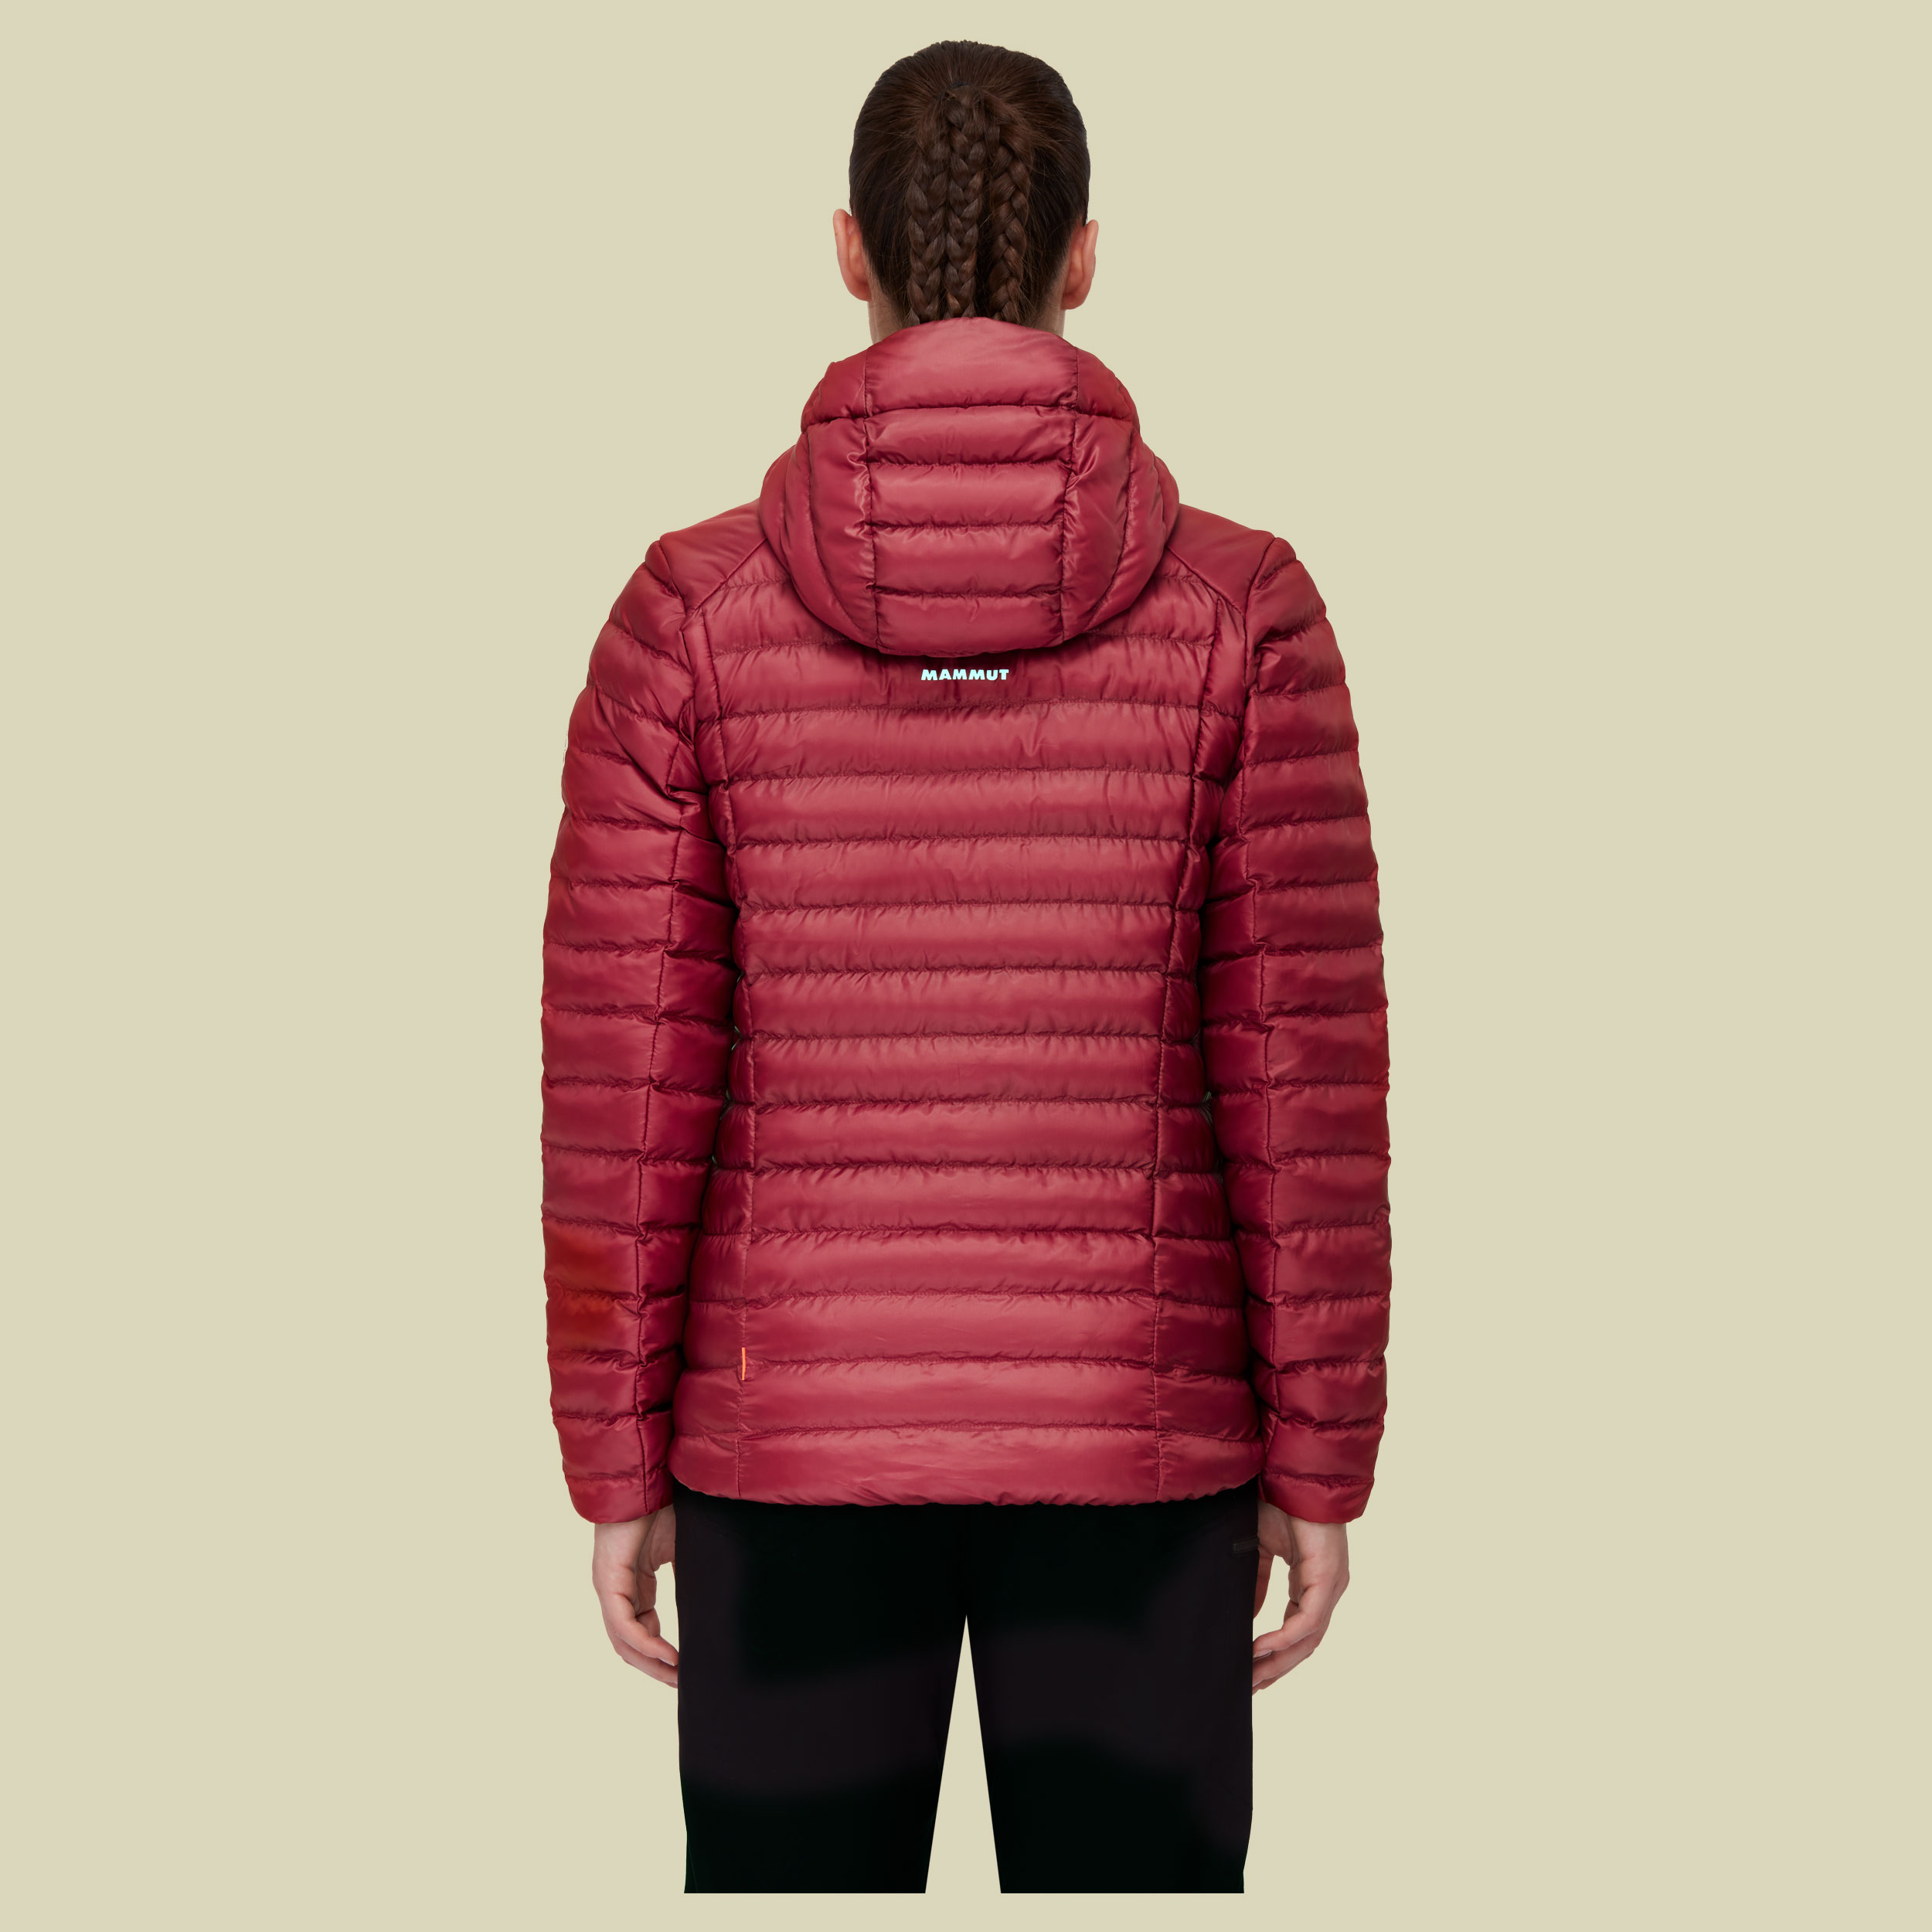 Albula IN Hooded Jacket Women 1013-01791 Größe XS Farbe blood red